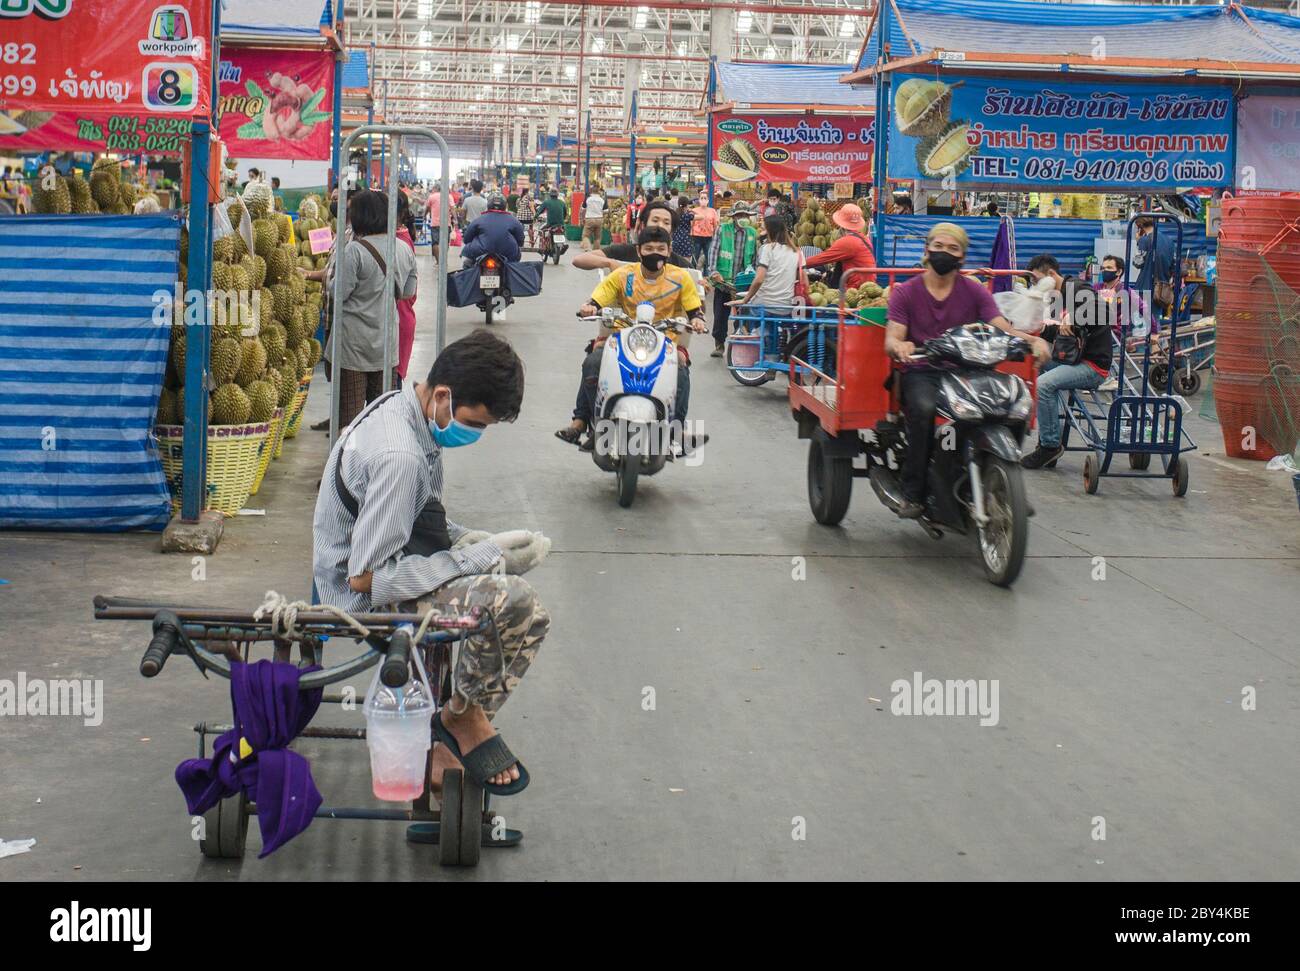 Les gens faisaient de l'activité dans la zone du marché, Bangkok Thaïlande Banque D'Images